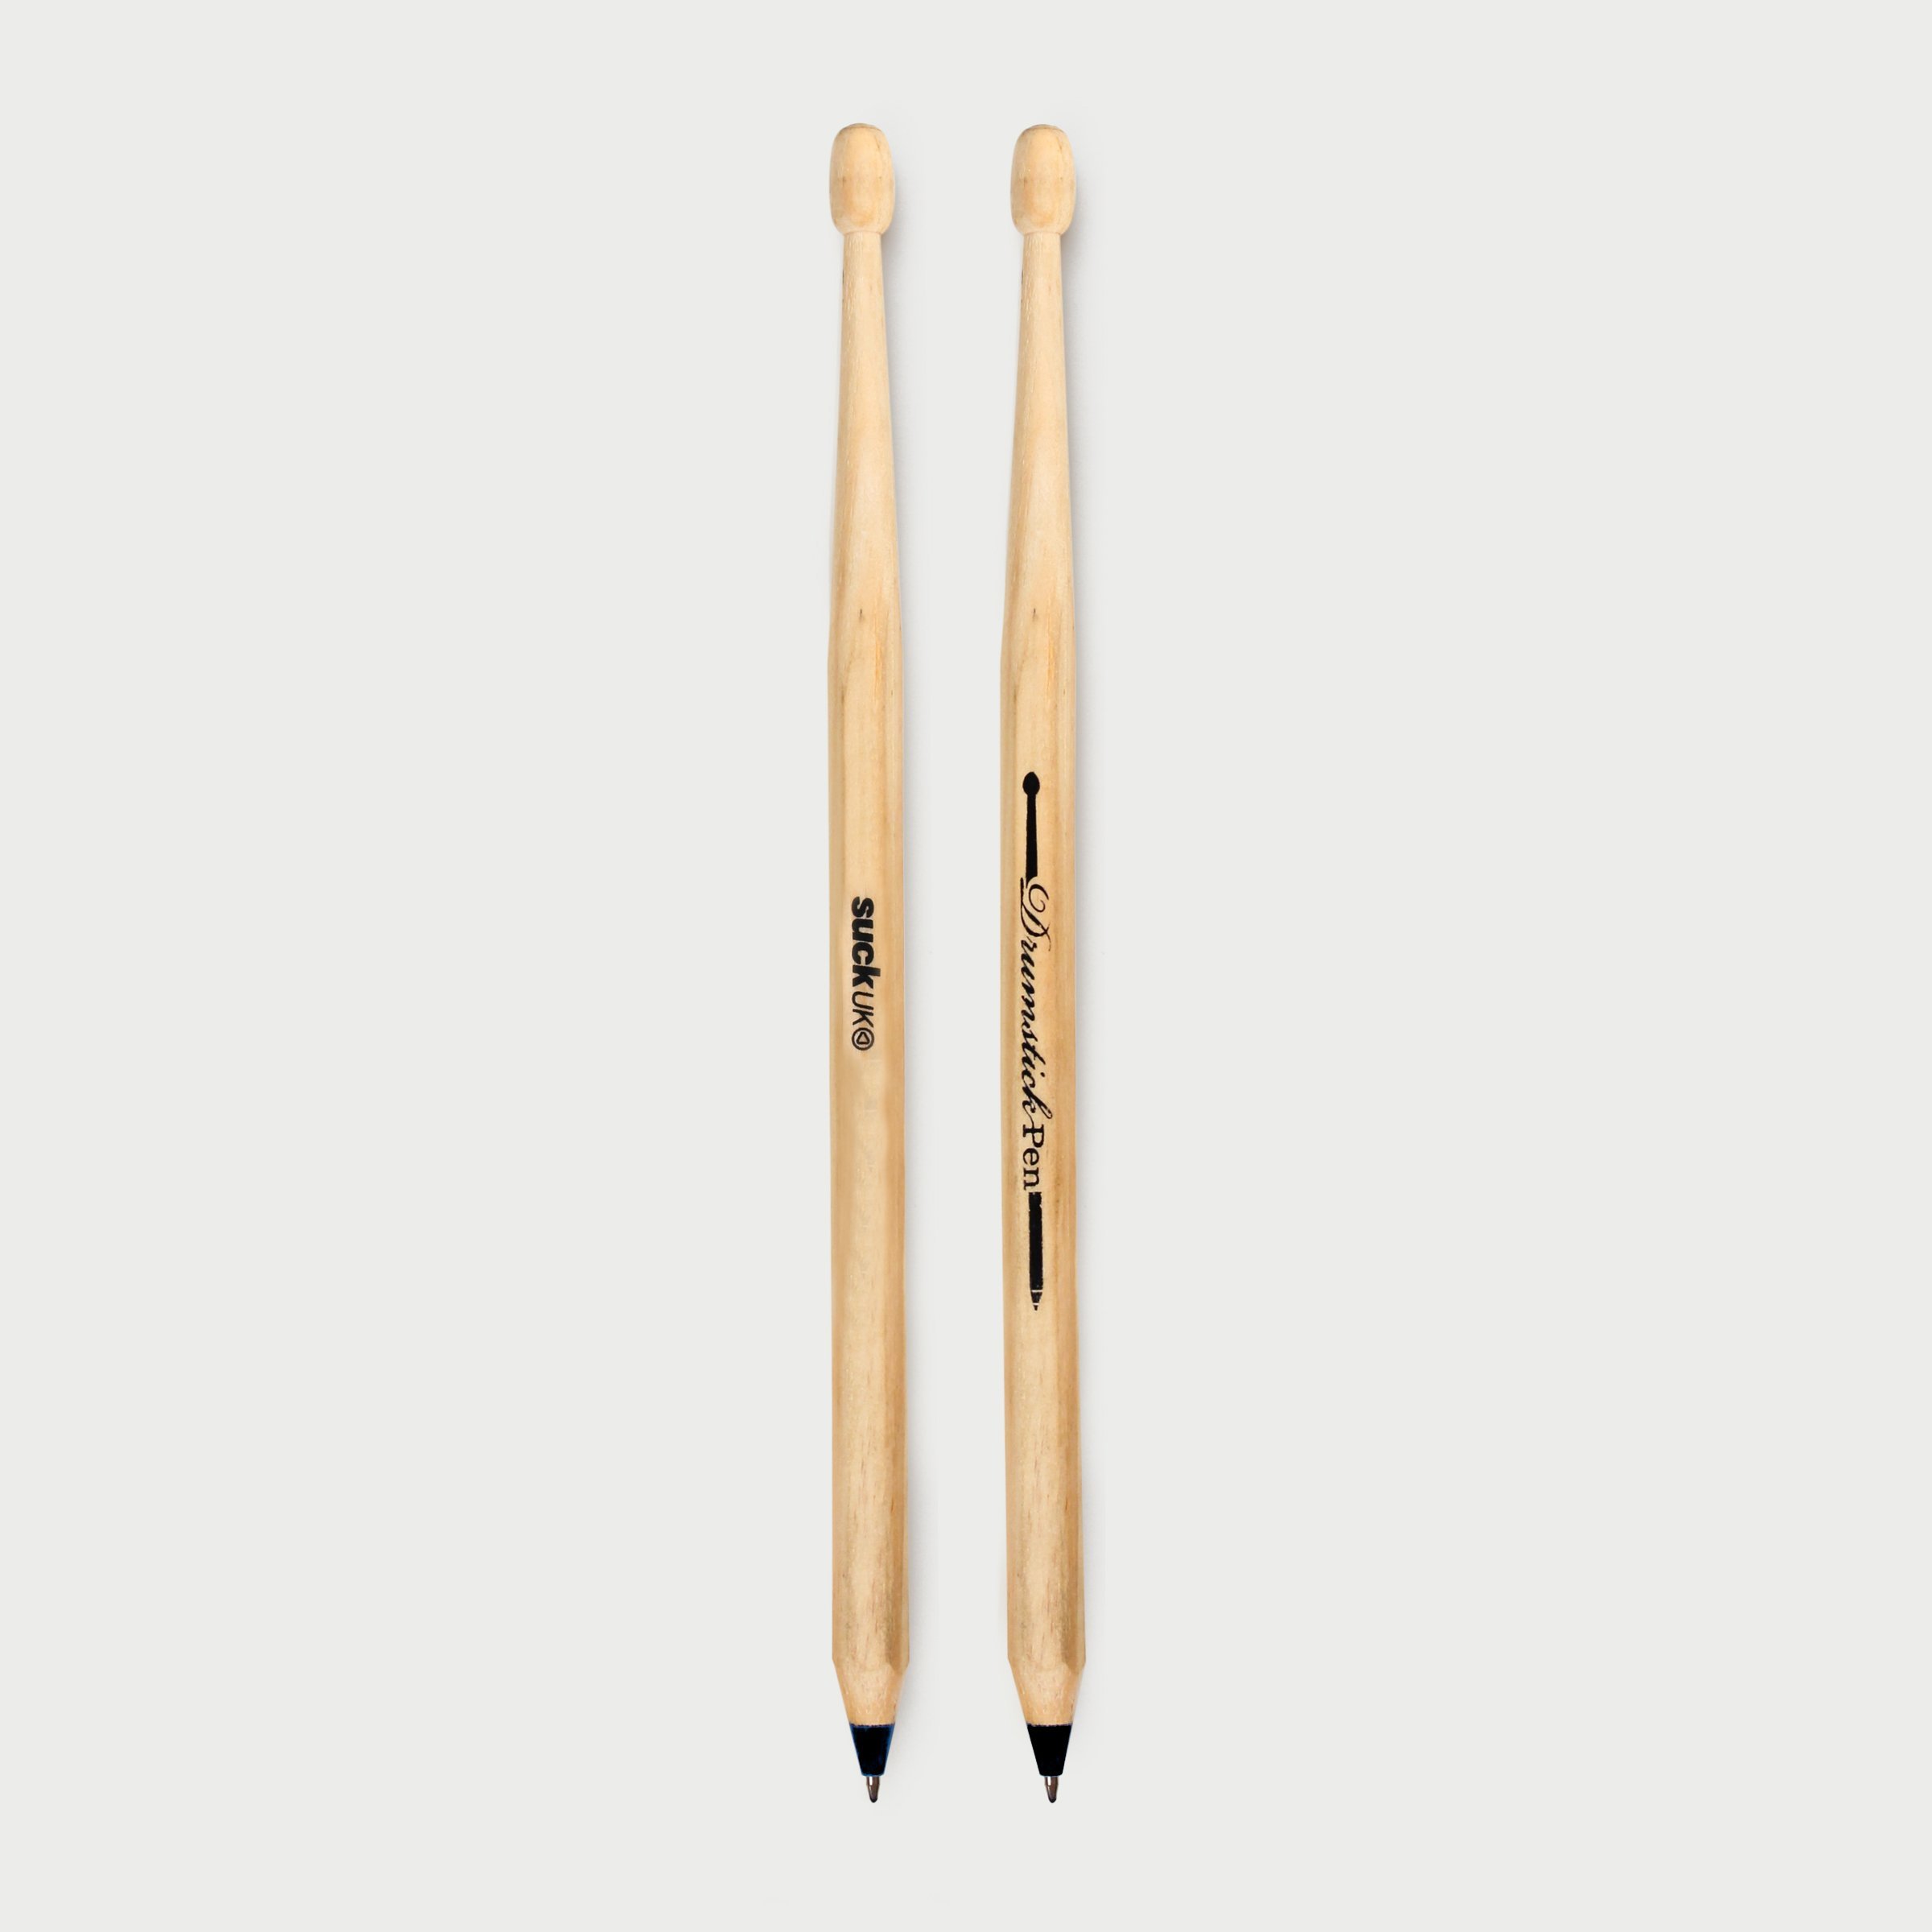 Black drumstick pens